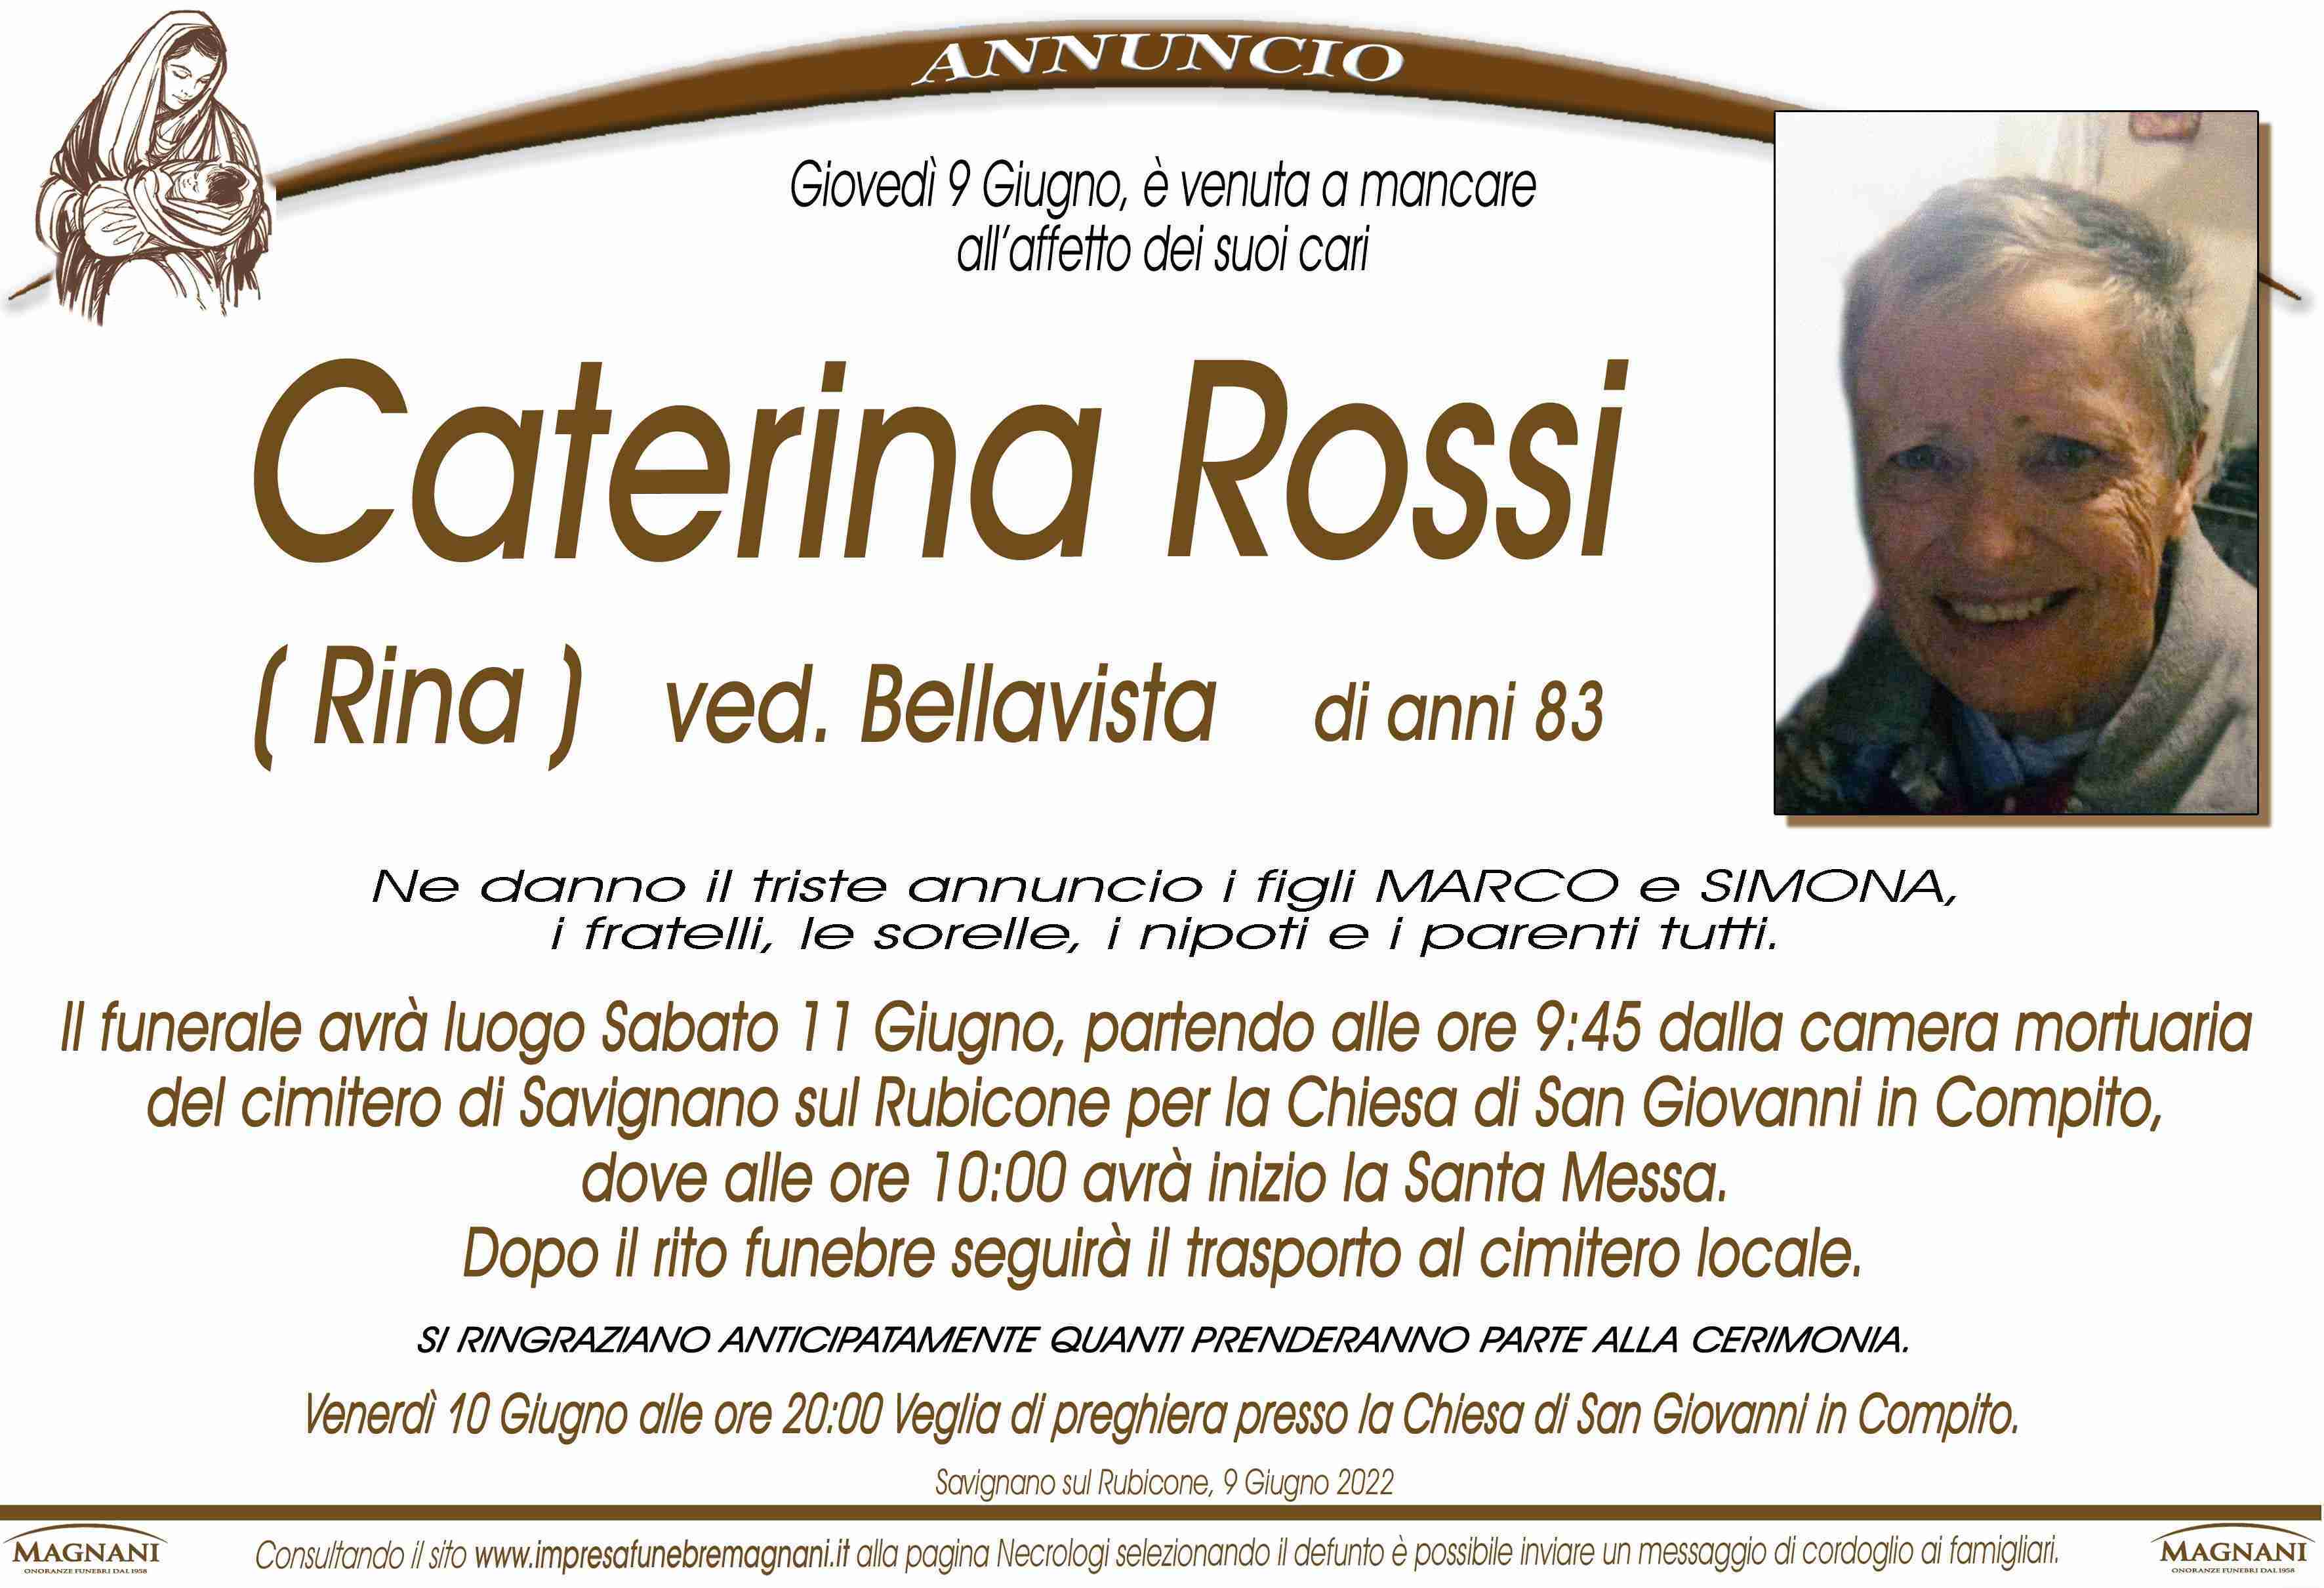 Caterina Rossi